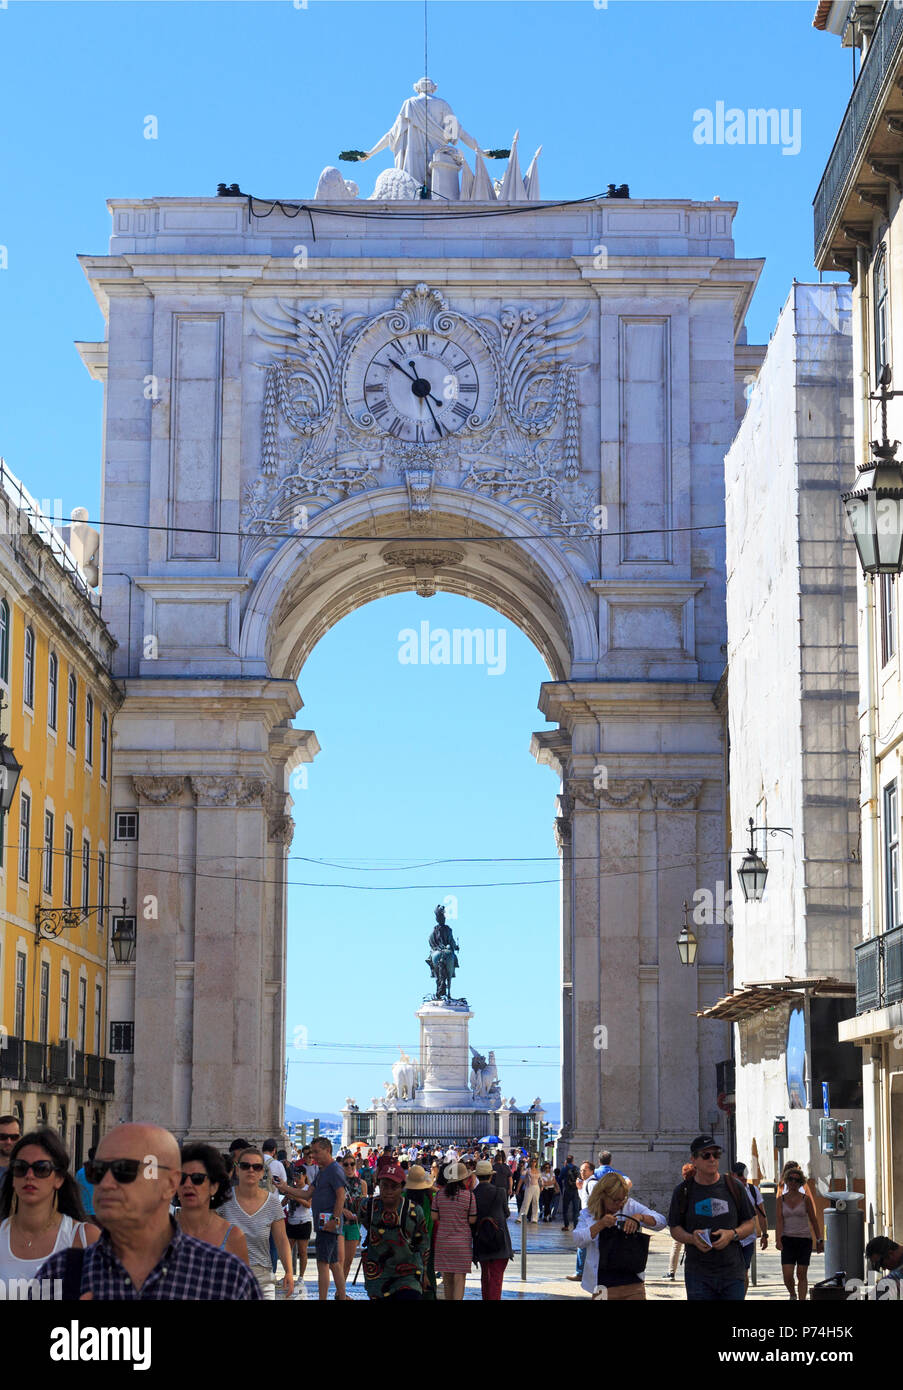 Vue de la rue Augusta, un arc de triomphe en marbre monument historique et attraction principale, à Lisbonne, Portugal Banque D'Images